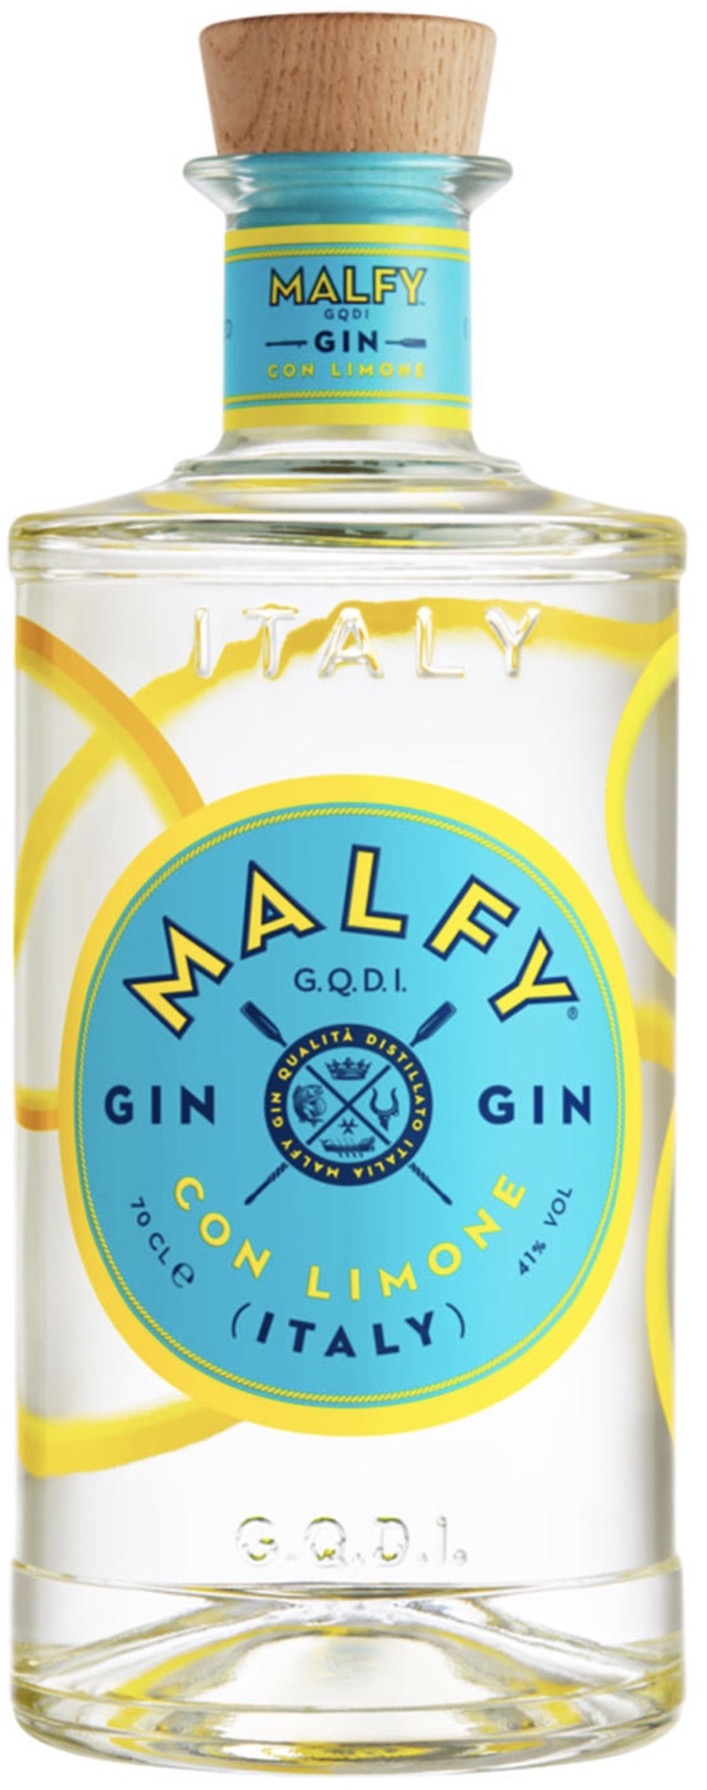 Malfy con Limone Gin 41% vol 0,7L